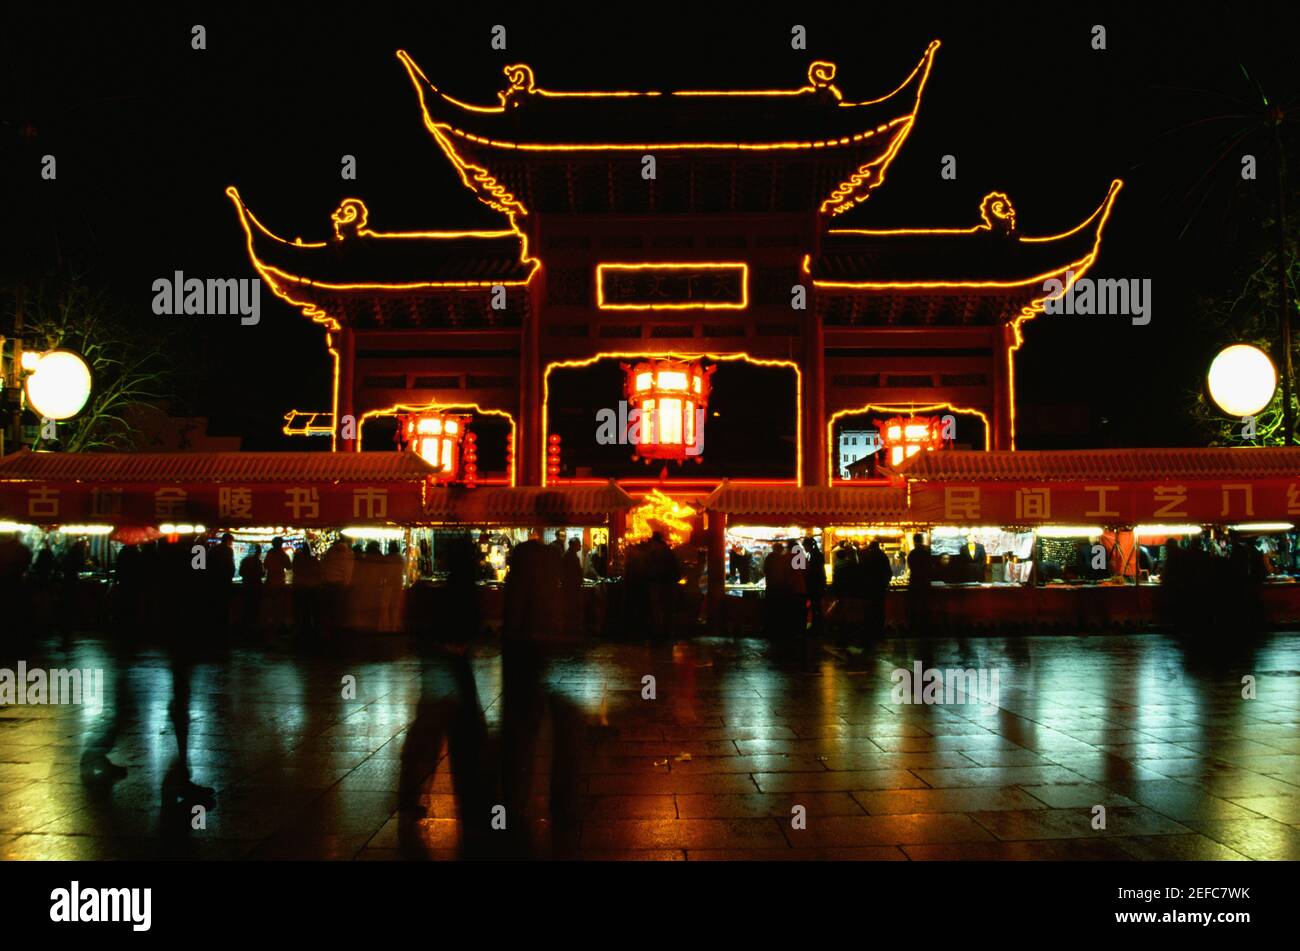 Reflet d'un temple illuminé dans l'eau, Nanjing, province de Jiangsu, Chine Banque D'Images